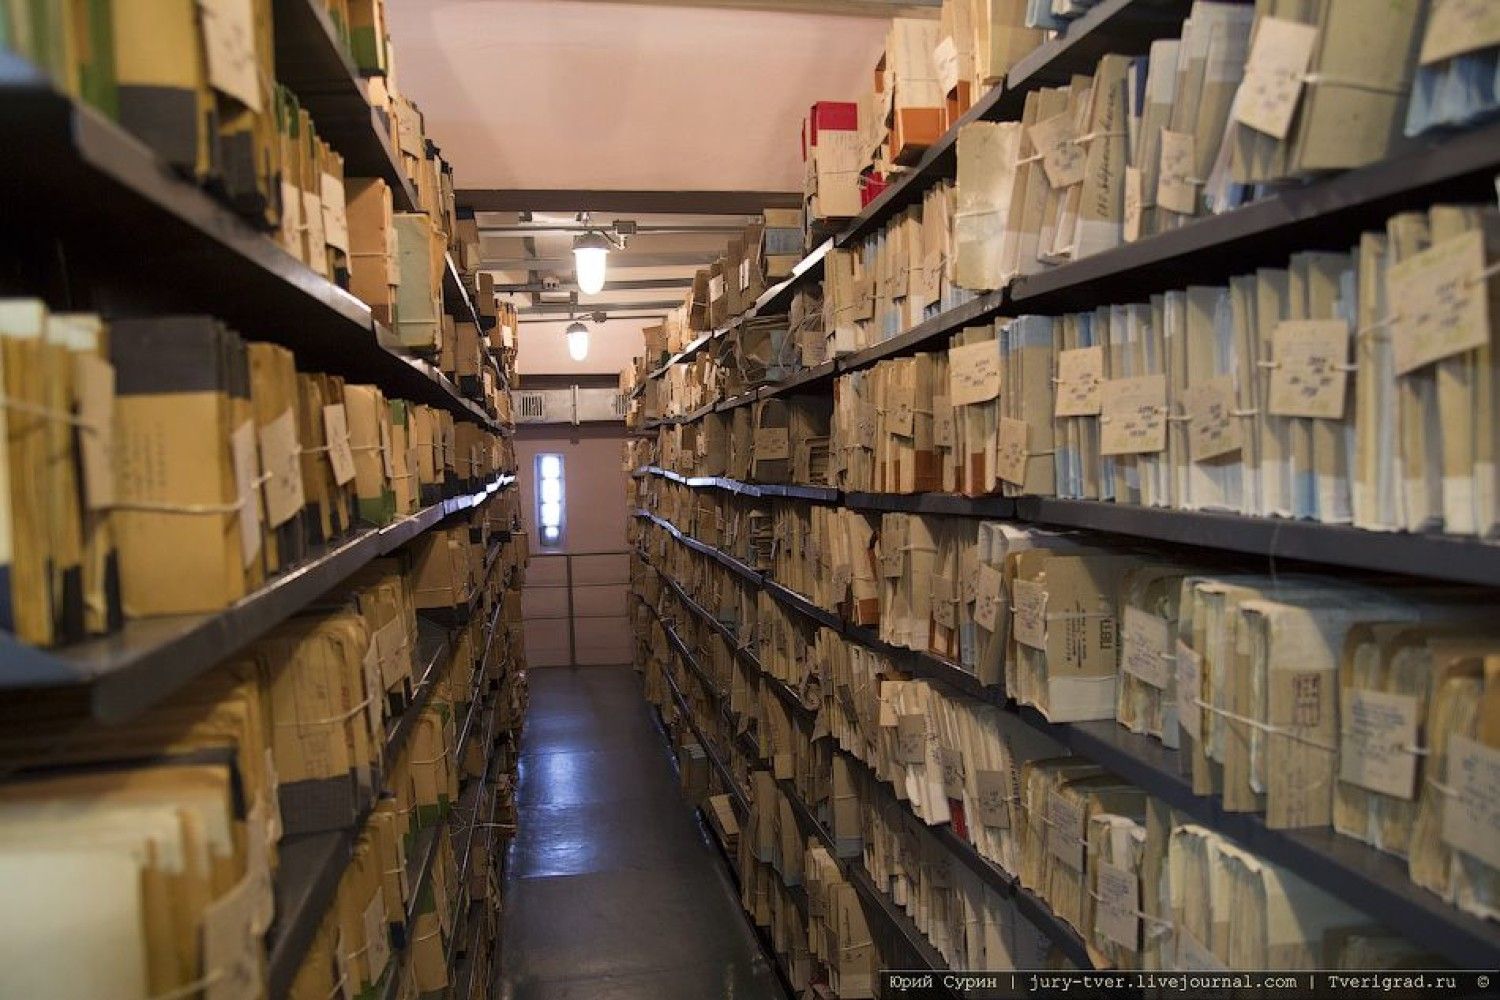 Архив экспертной организации. Архивное хранение документов. Хранение дел в архиве. Архив организации. Архивное помещение.